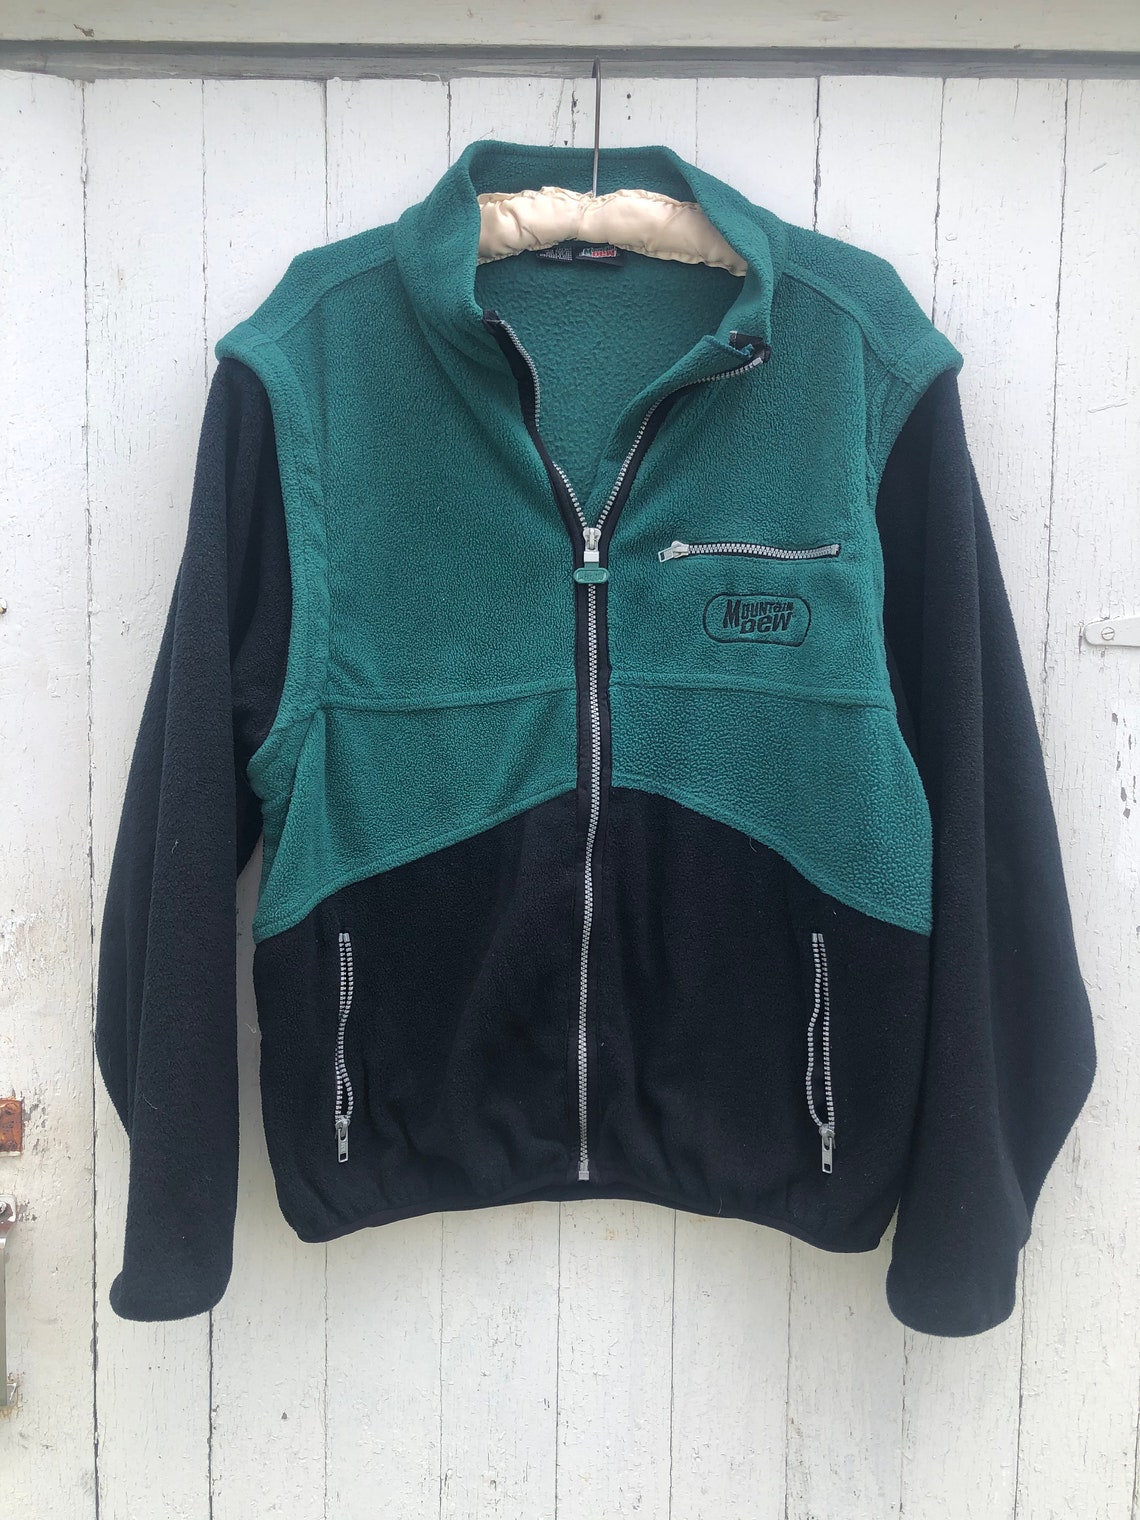 Vintage 90s Y2K Mountain Dew Fleece Sherpa Jacket 1990s Green | Etsy